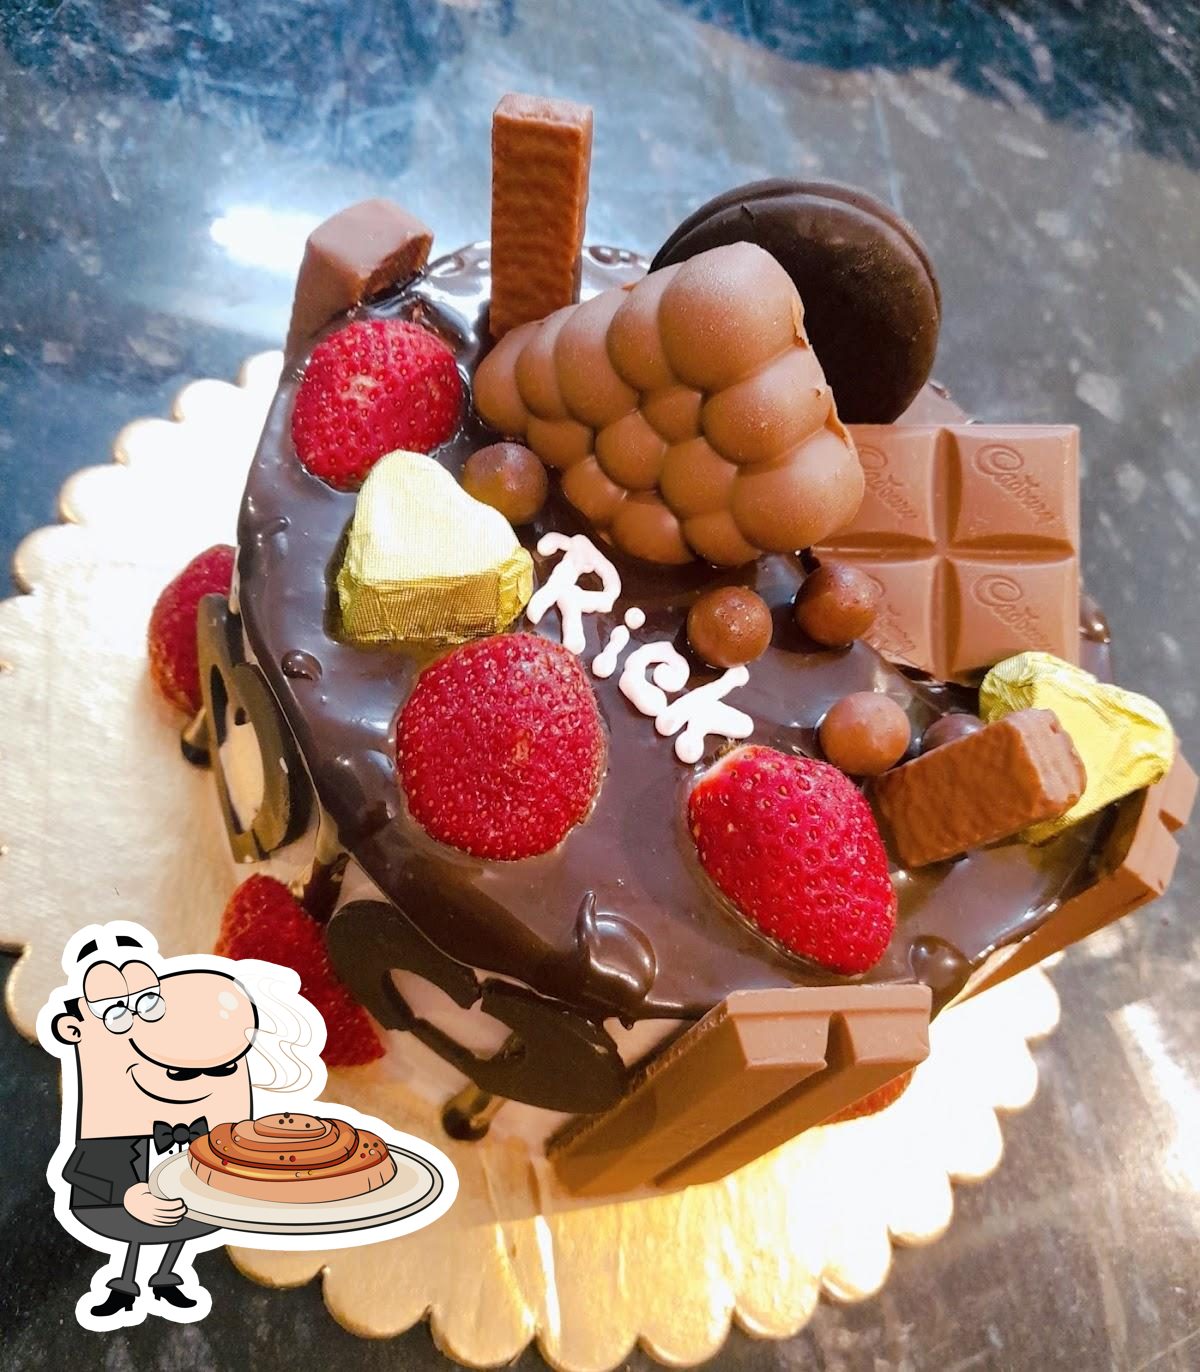 سويت وكيك غاليري Cake Gallery | Best cake in UAE‎ on Instagram: 